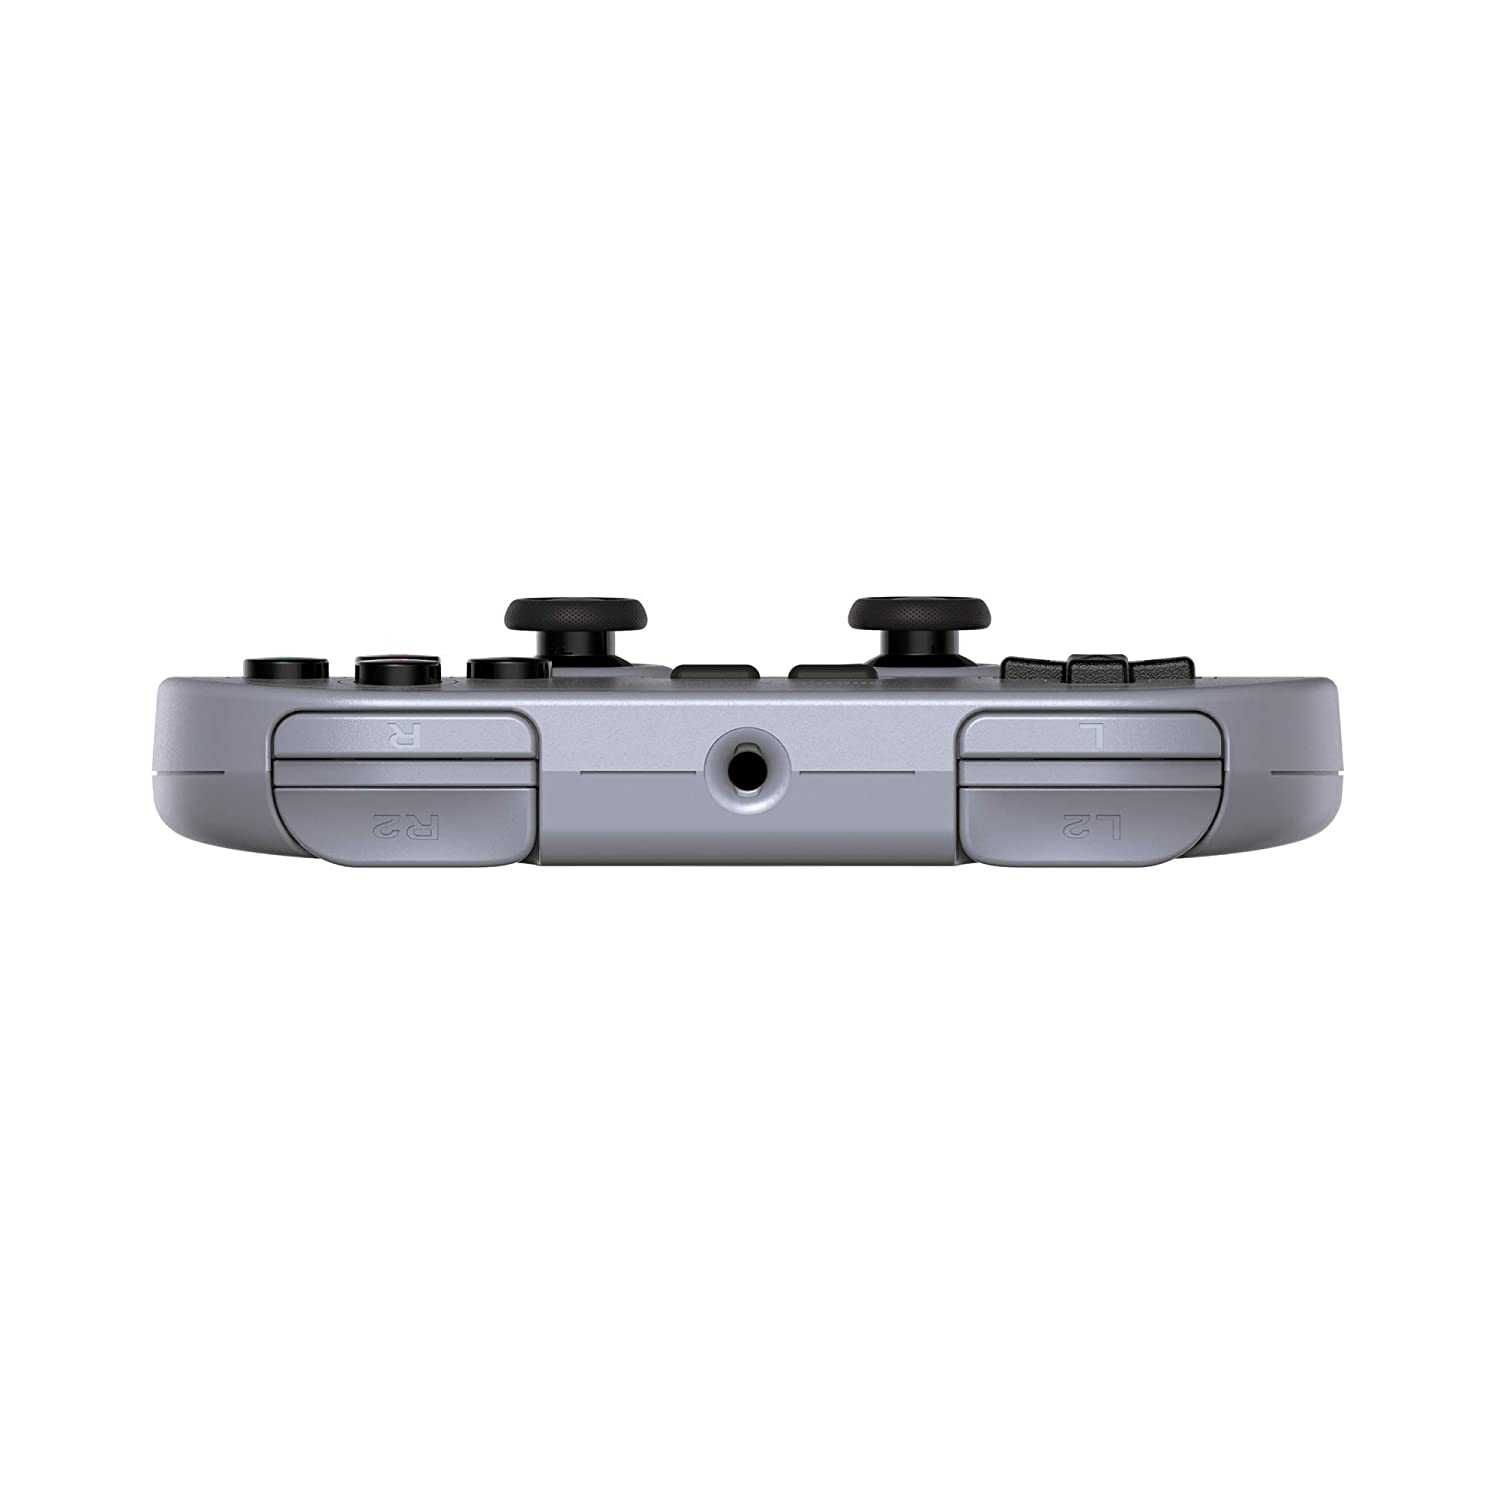 Controller 8Bitdo Sn30 Pro USB Gamepad,gray edition,sigilat